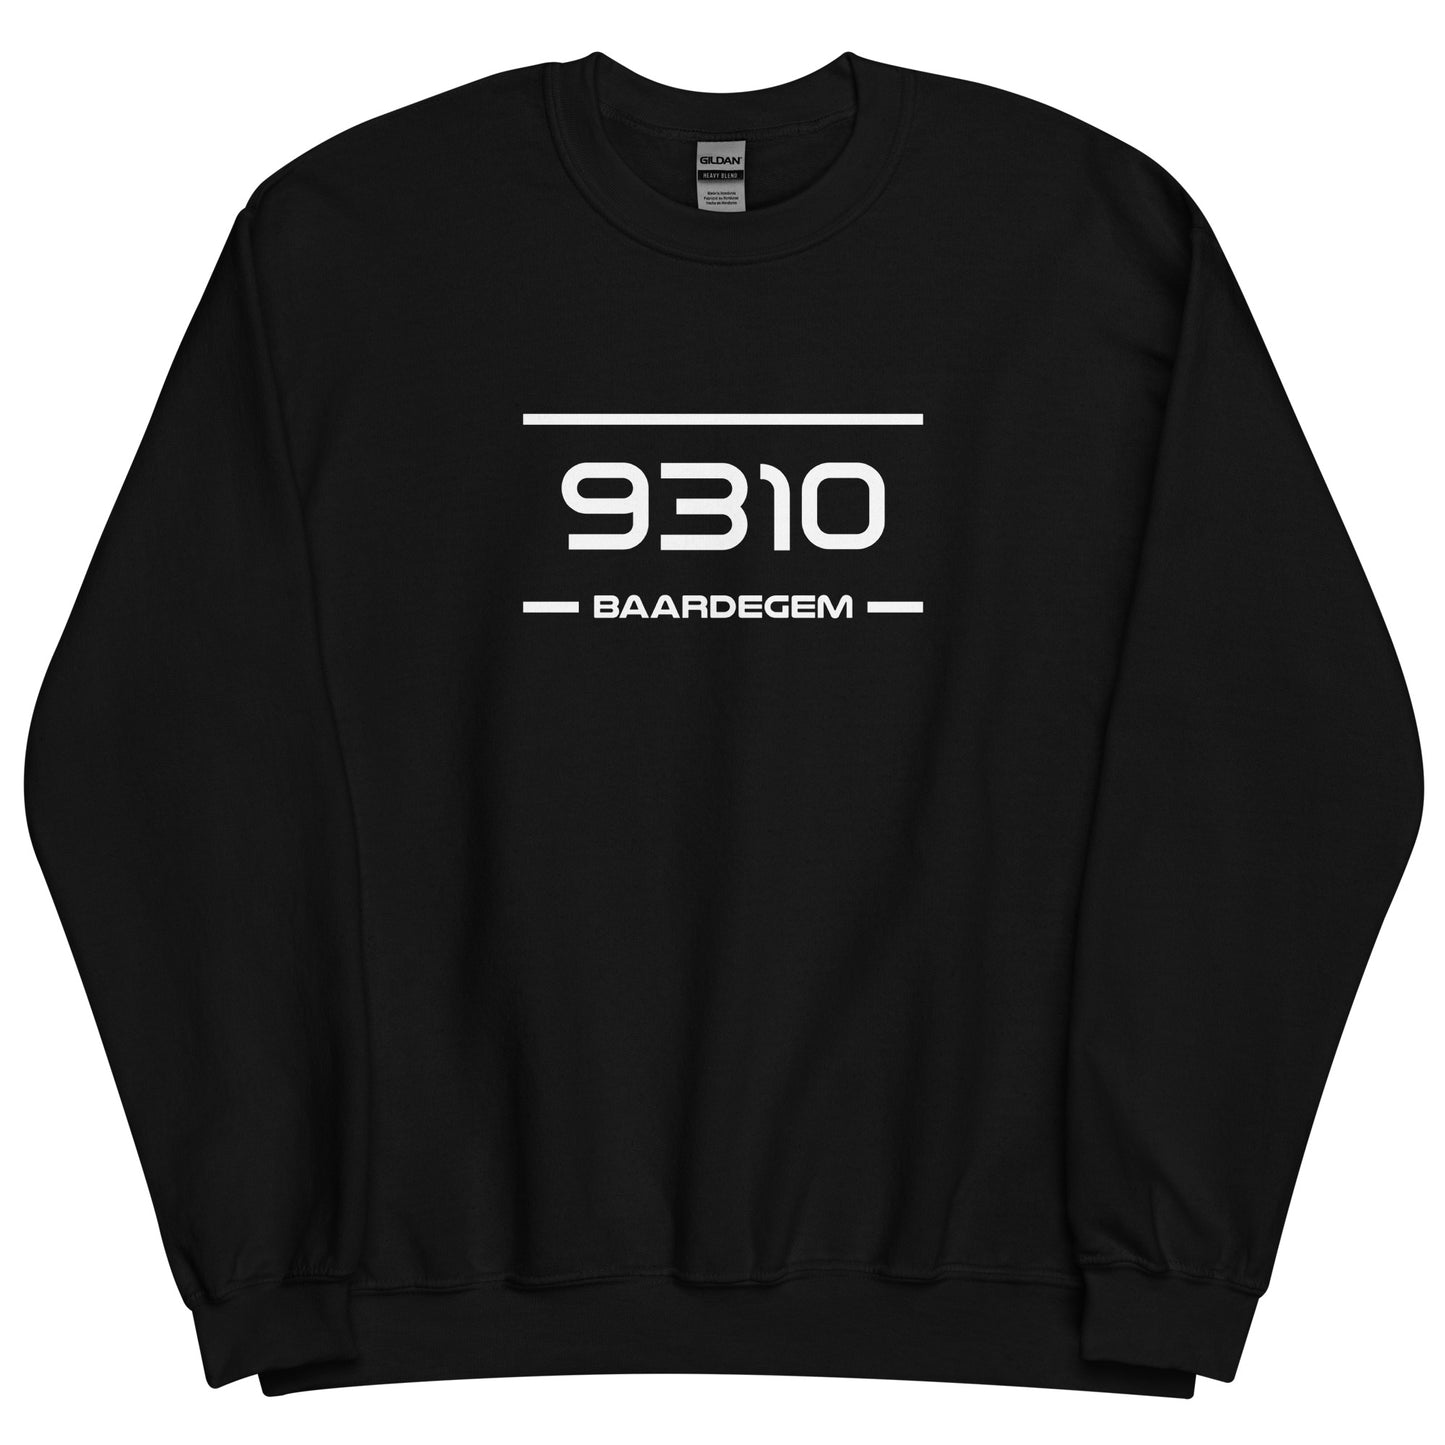 Sweater - 9310 - Baardegem (M/V)